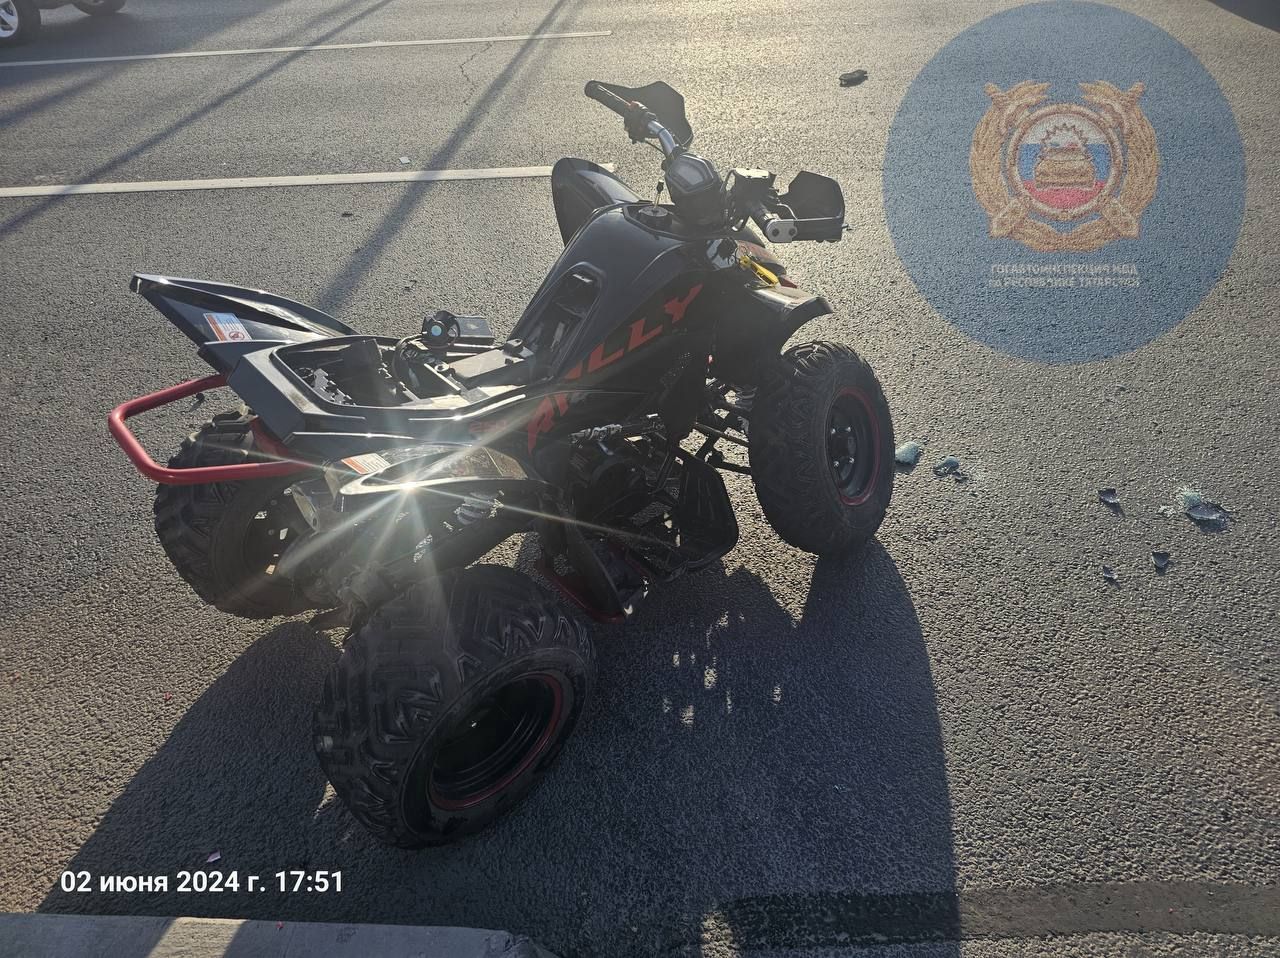 В Челнах водитель квадроцикла погиб после столкновения с легковушкой